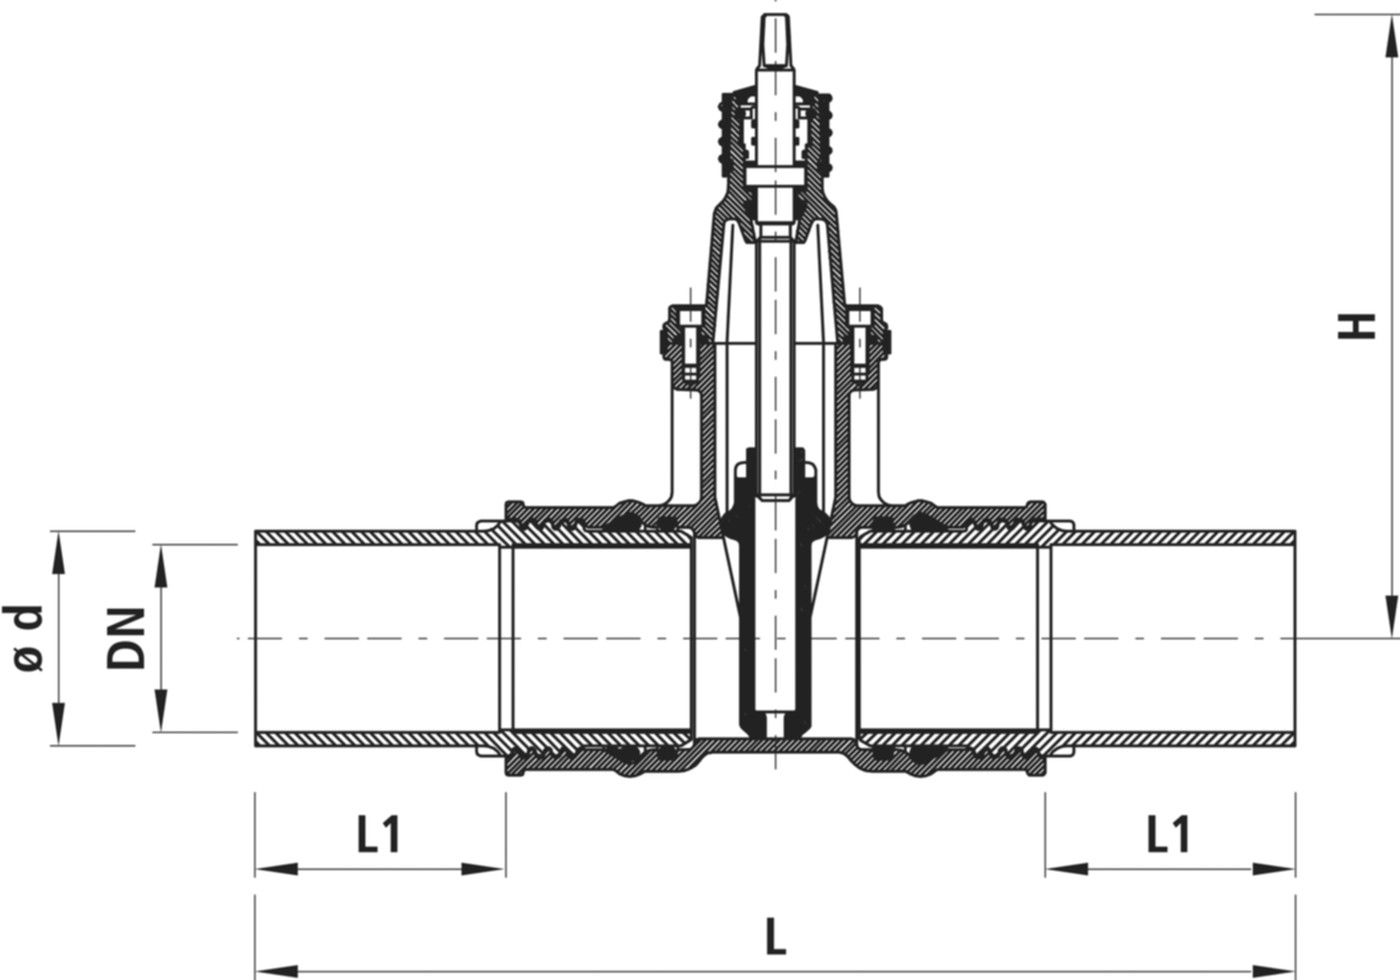 Einschweiss-Schieber für Gas 4815 DN 125 / d 140mm - Hawle Armaturen